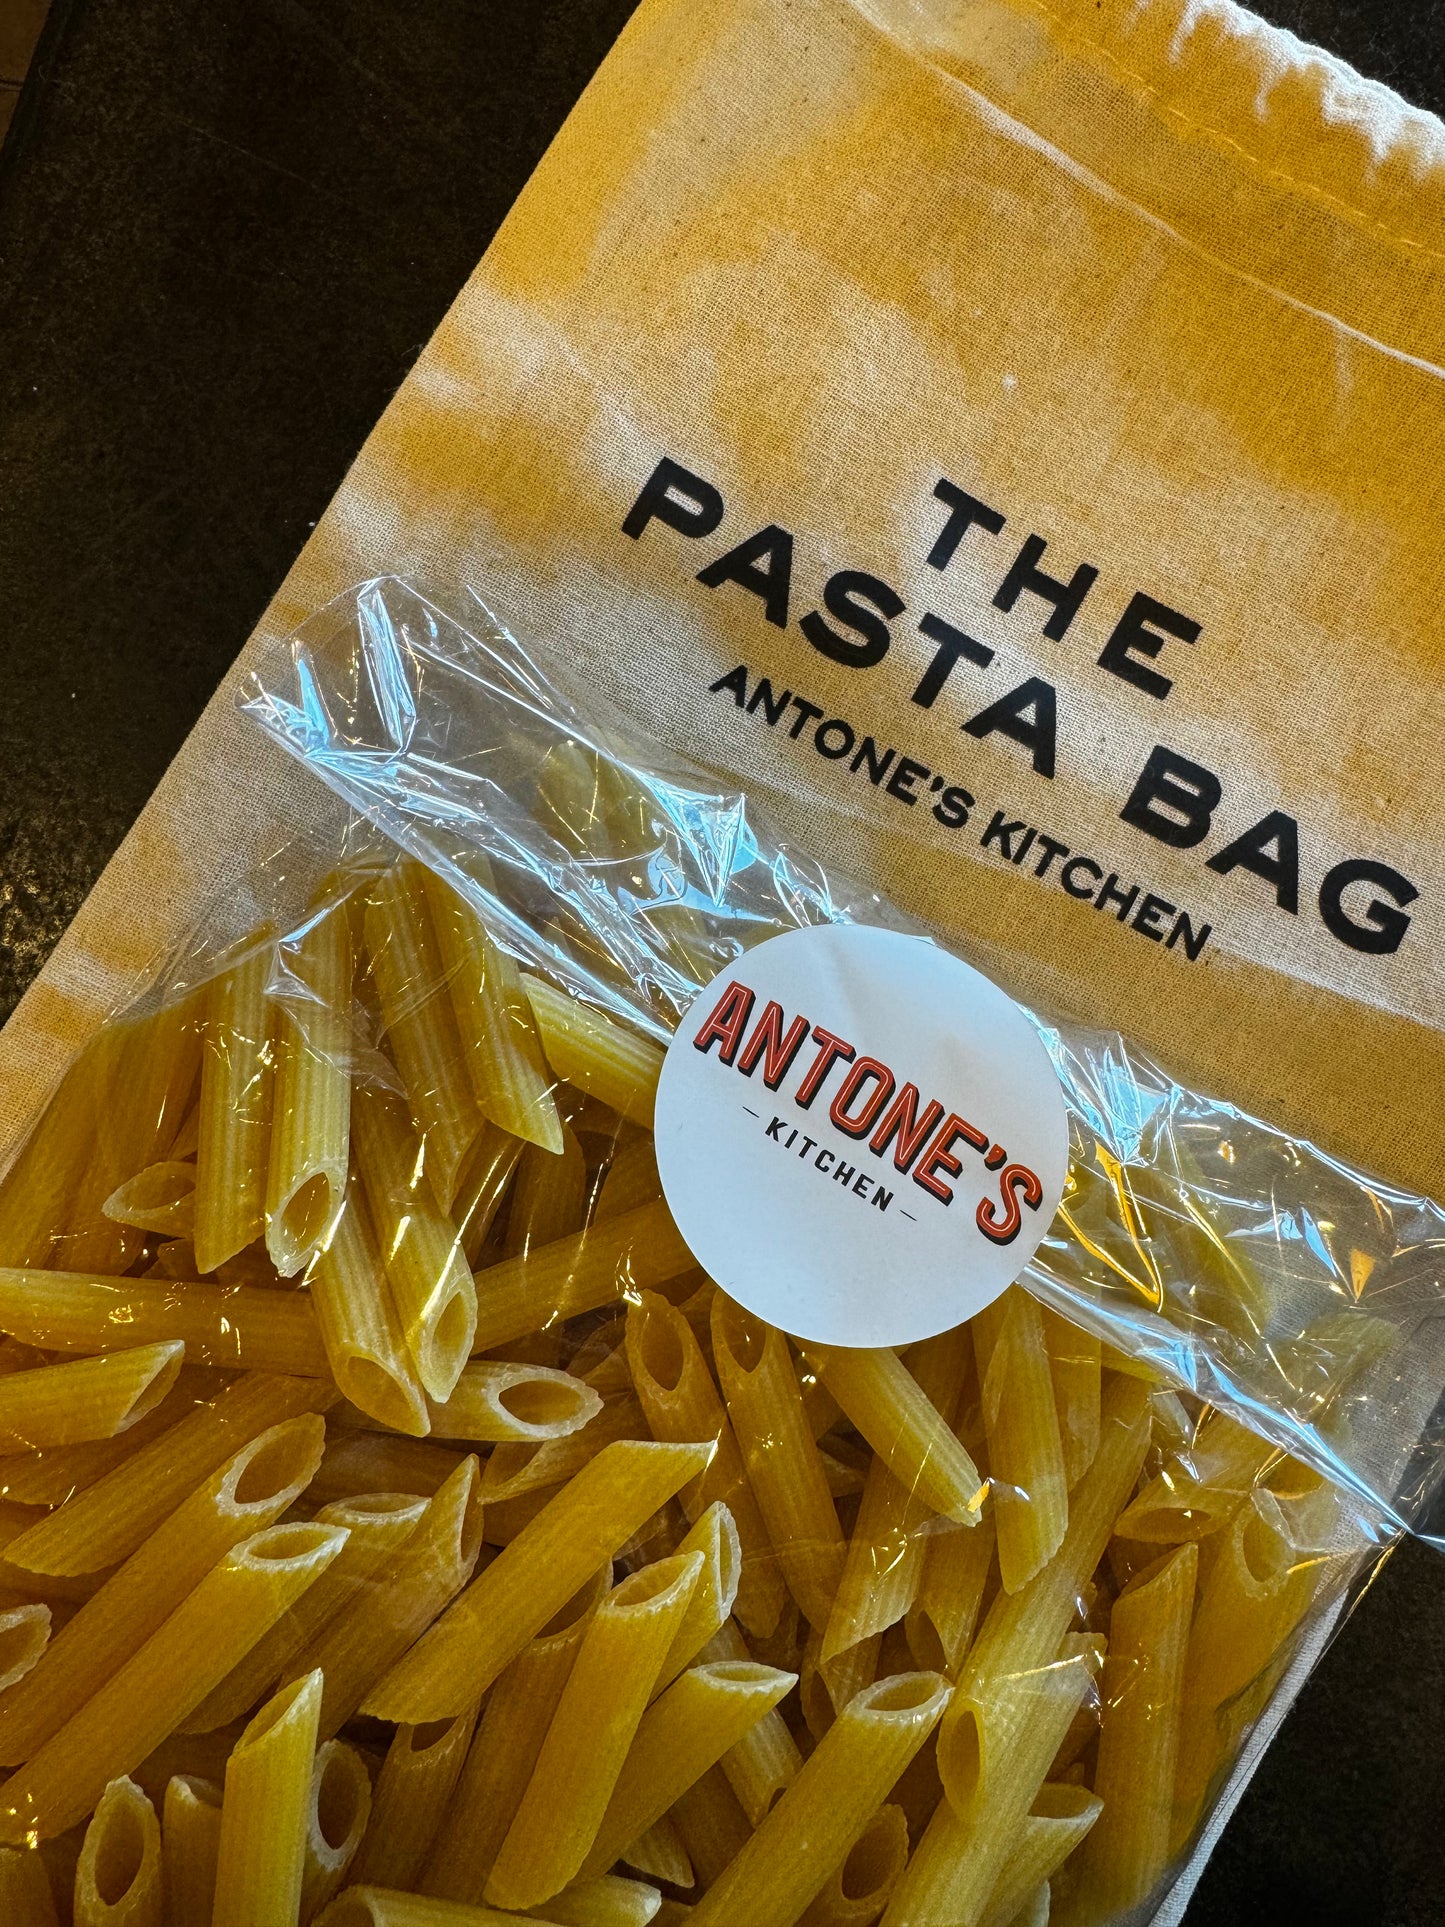 "The Pasta Bag"